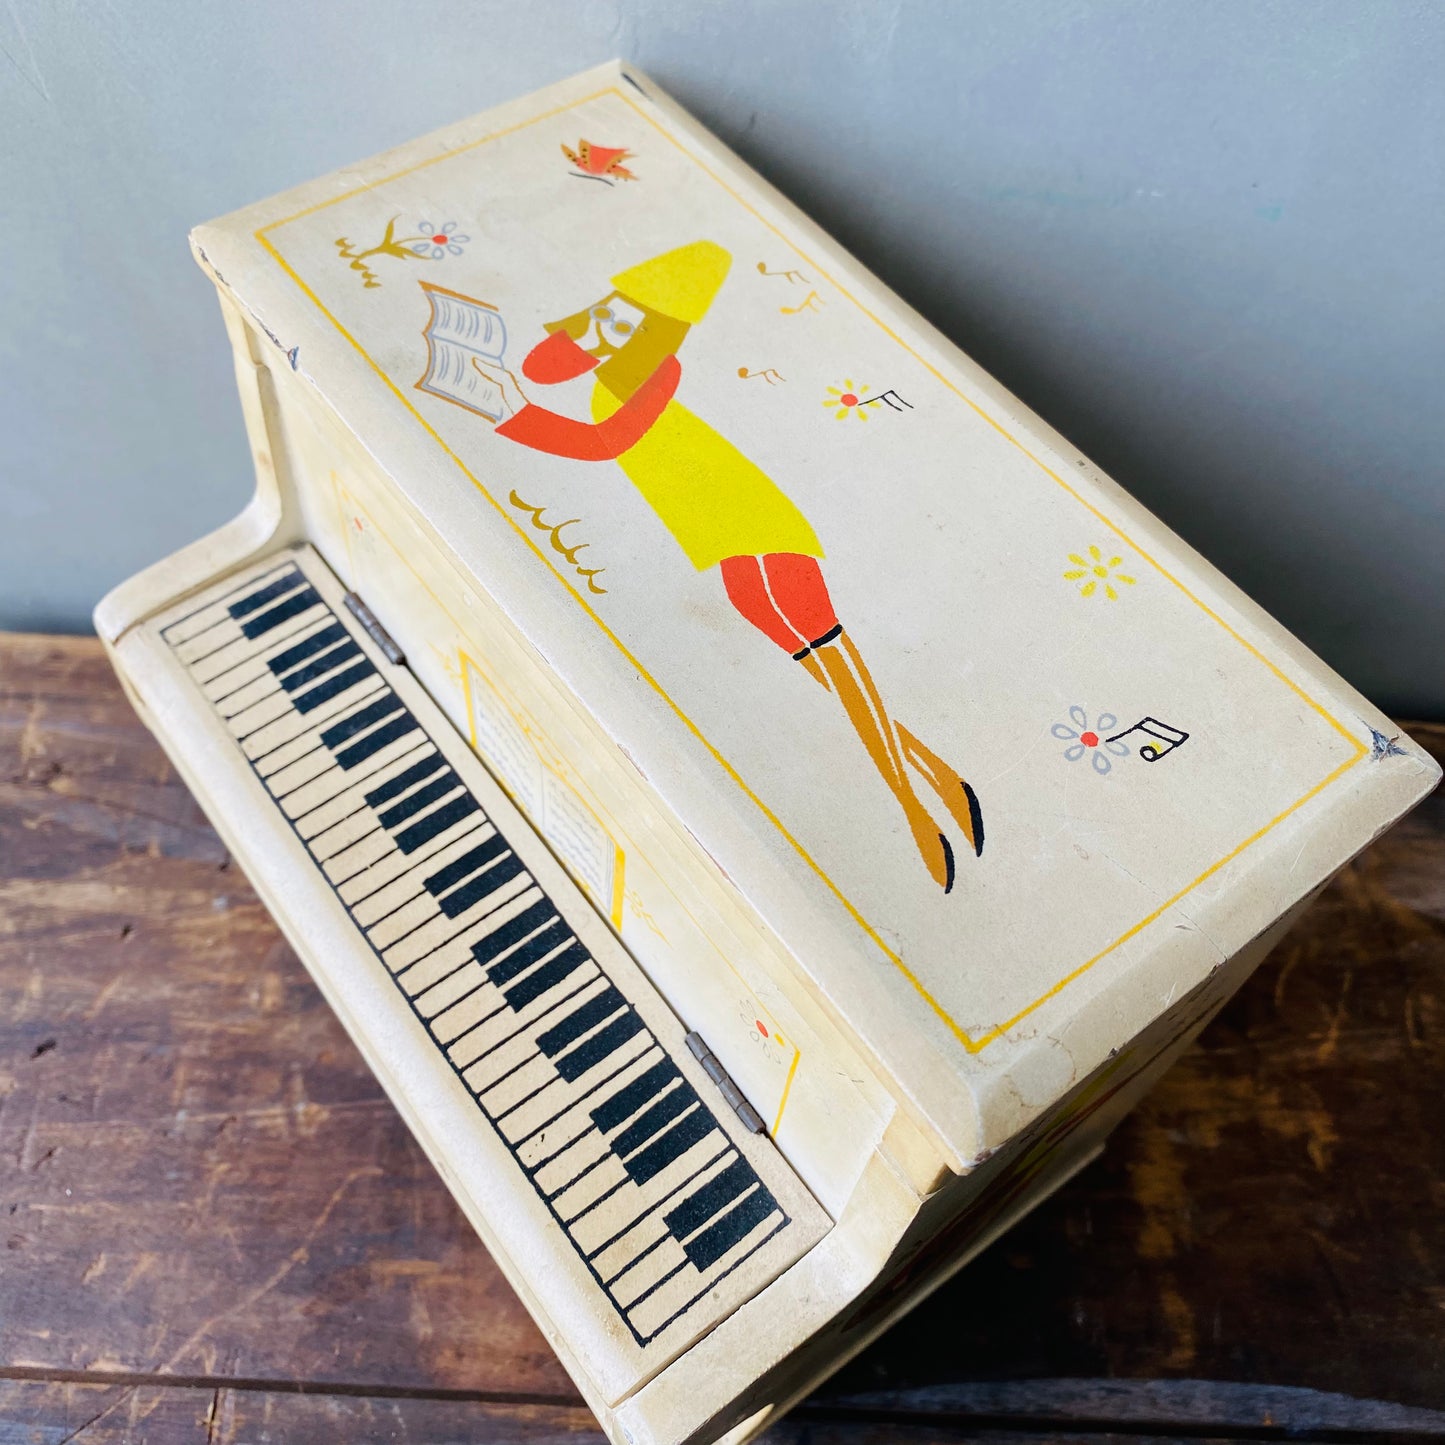 【JPN vintage】MELE ピアノ型 オルゴール付 ジュエリーボックス